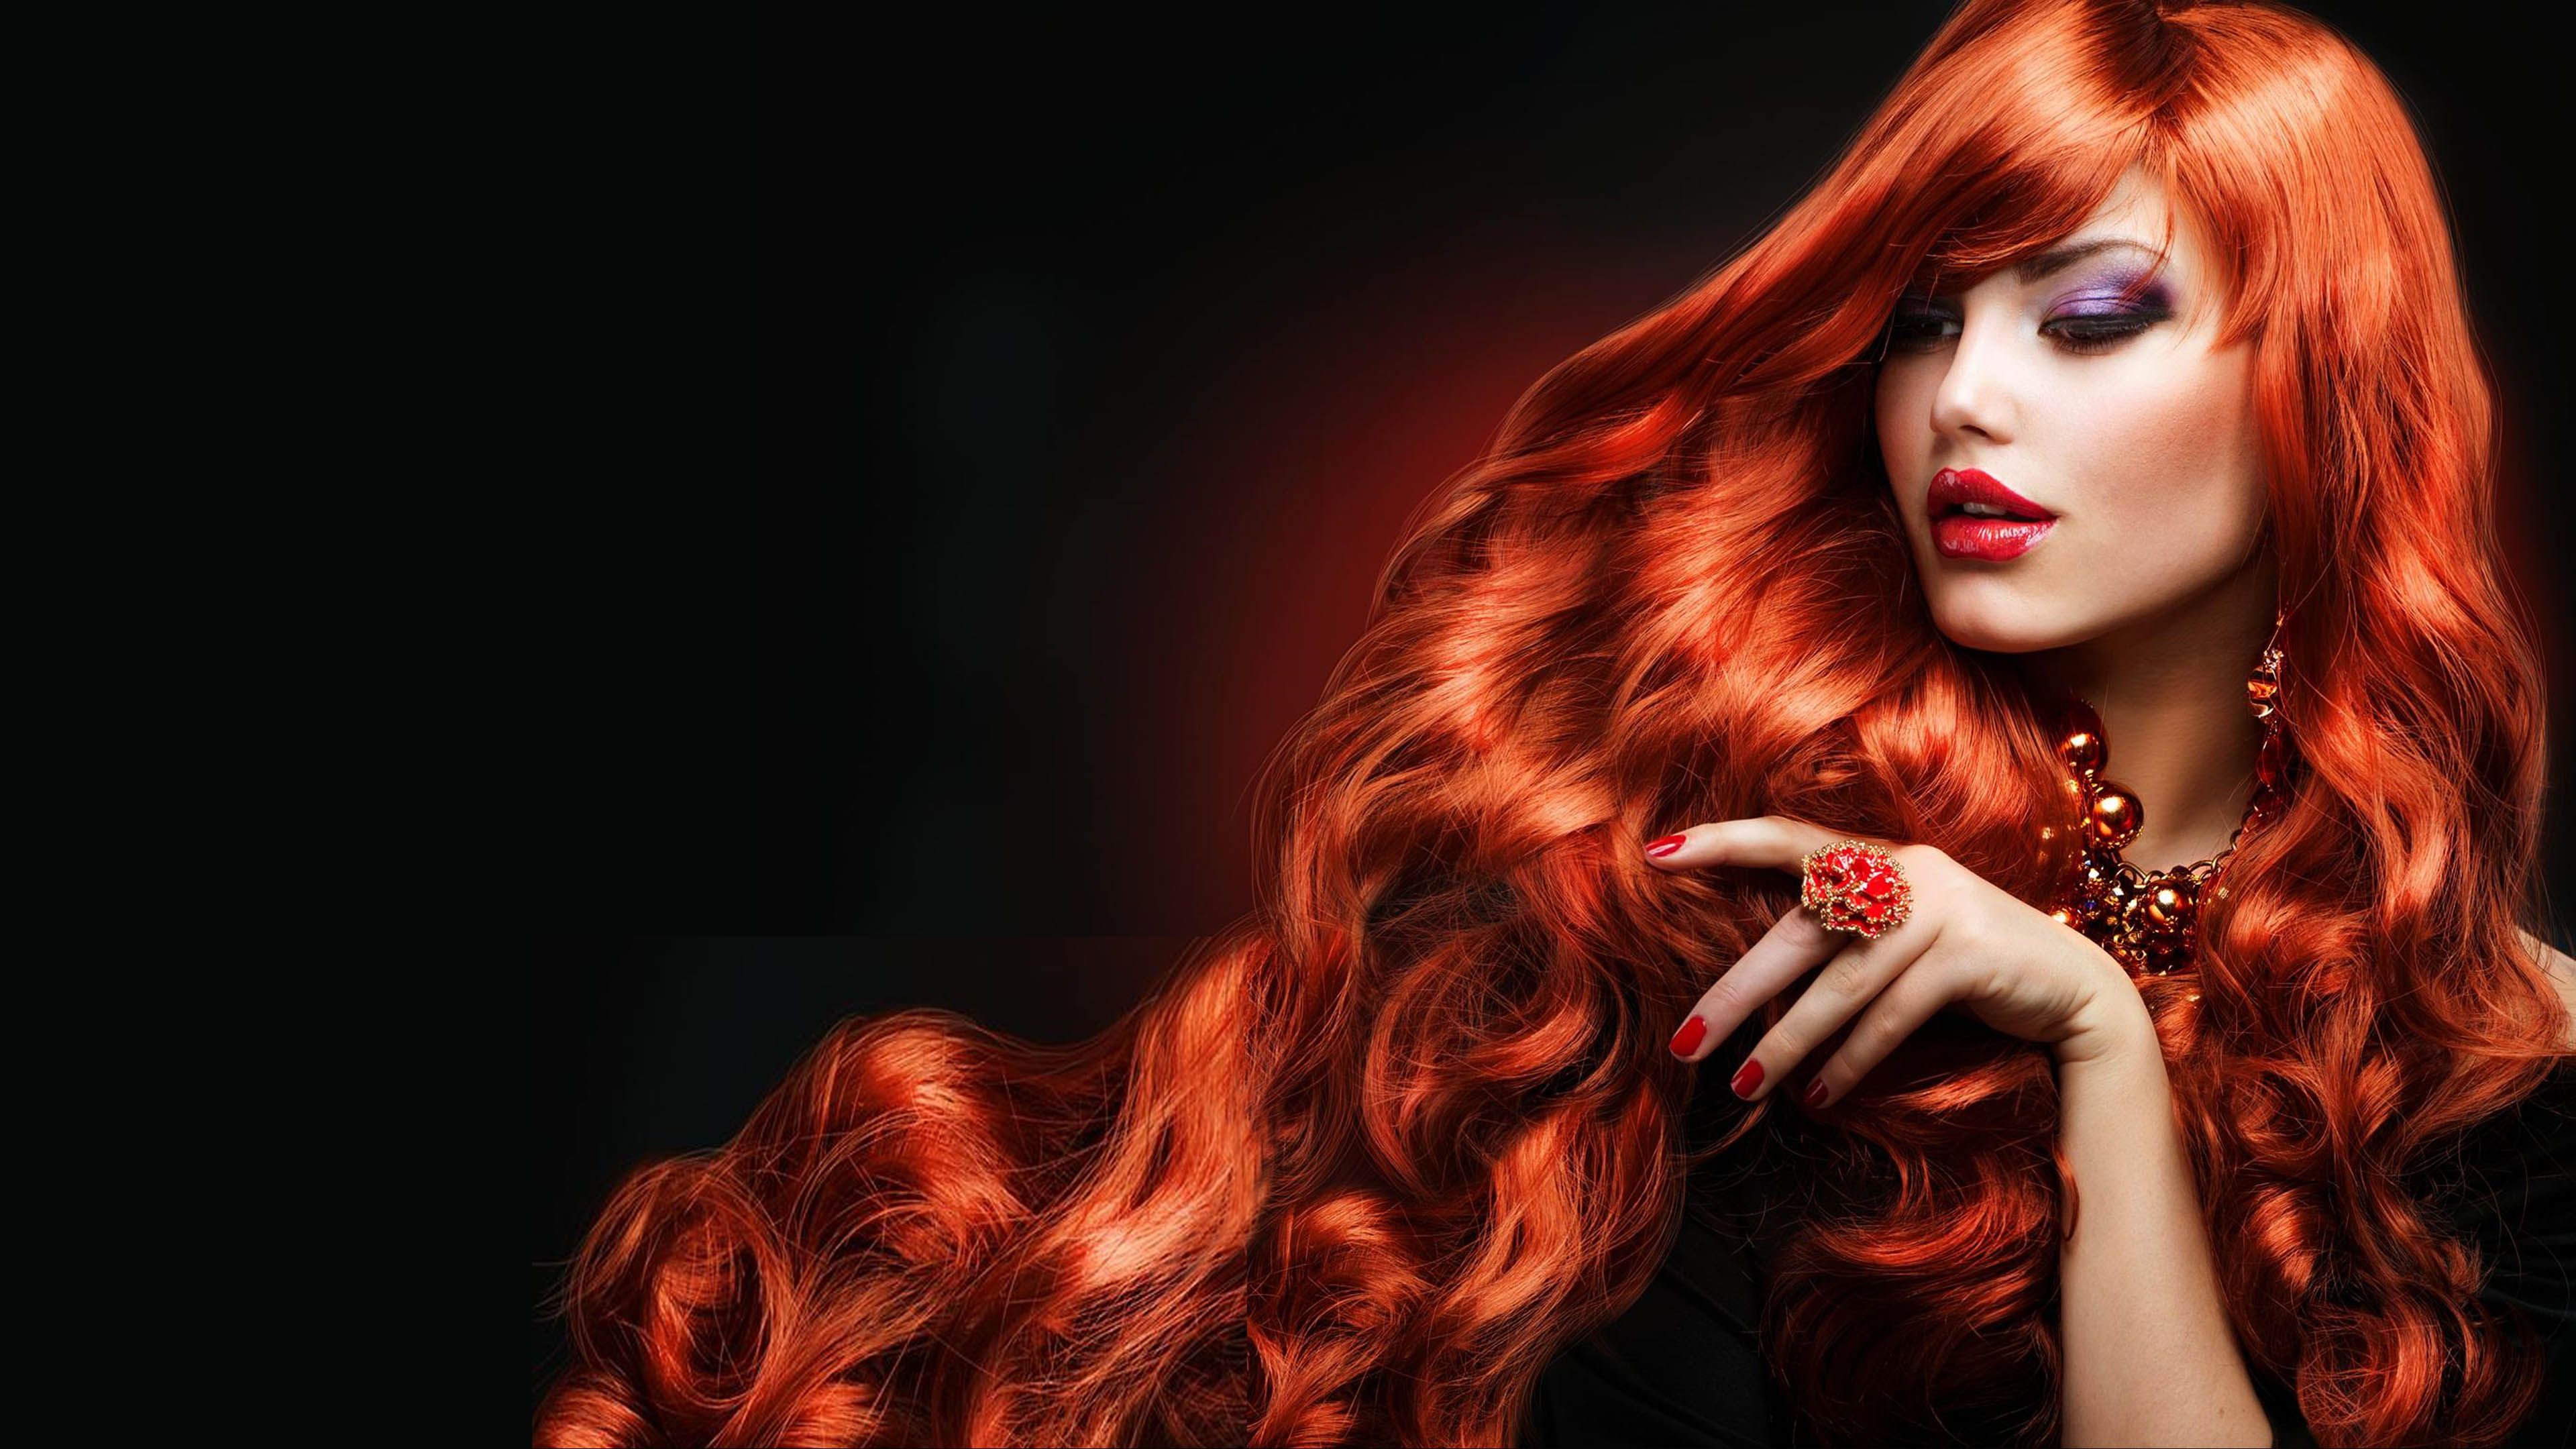 Beautiful women long hair red lips .wallpaper13.com